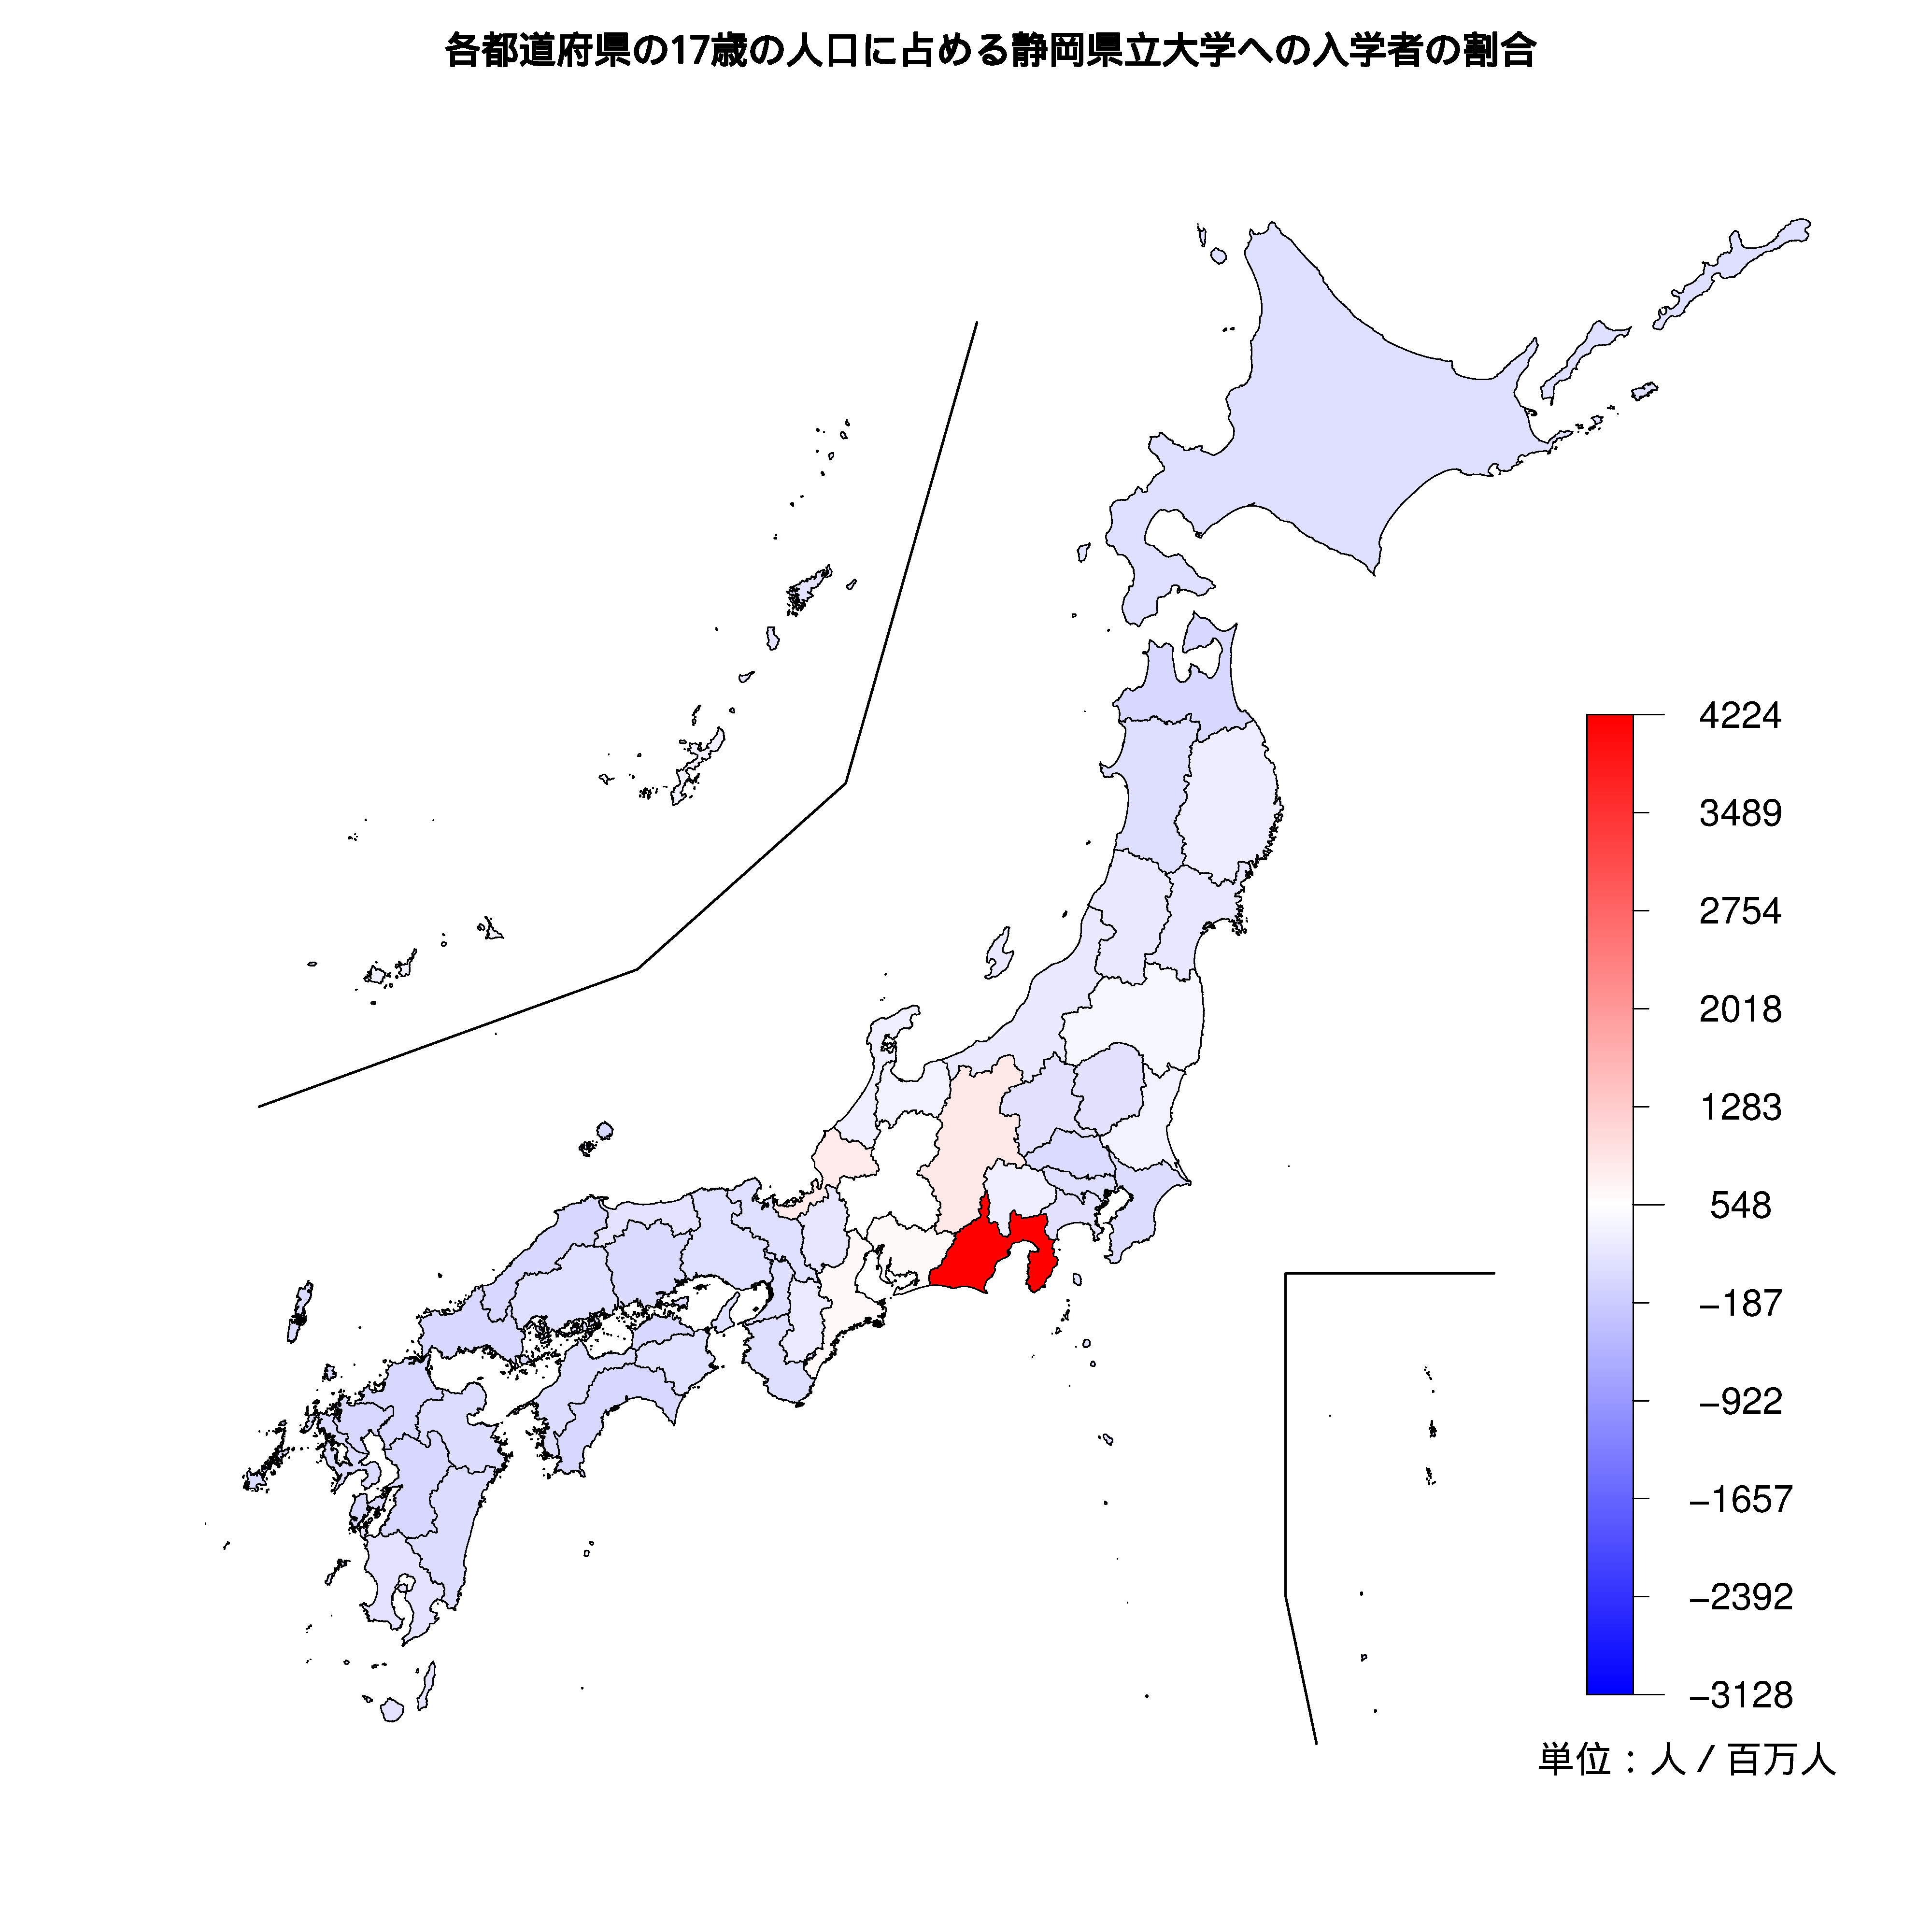 静岡県立大学への入学者が多い都道府県の色分け地図